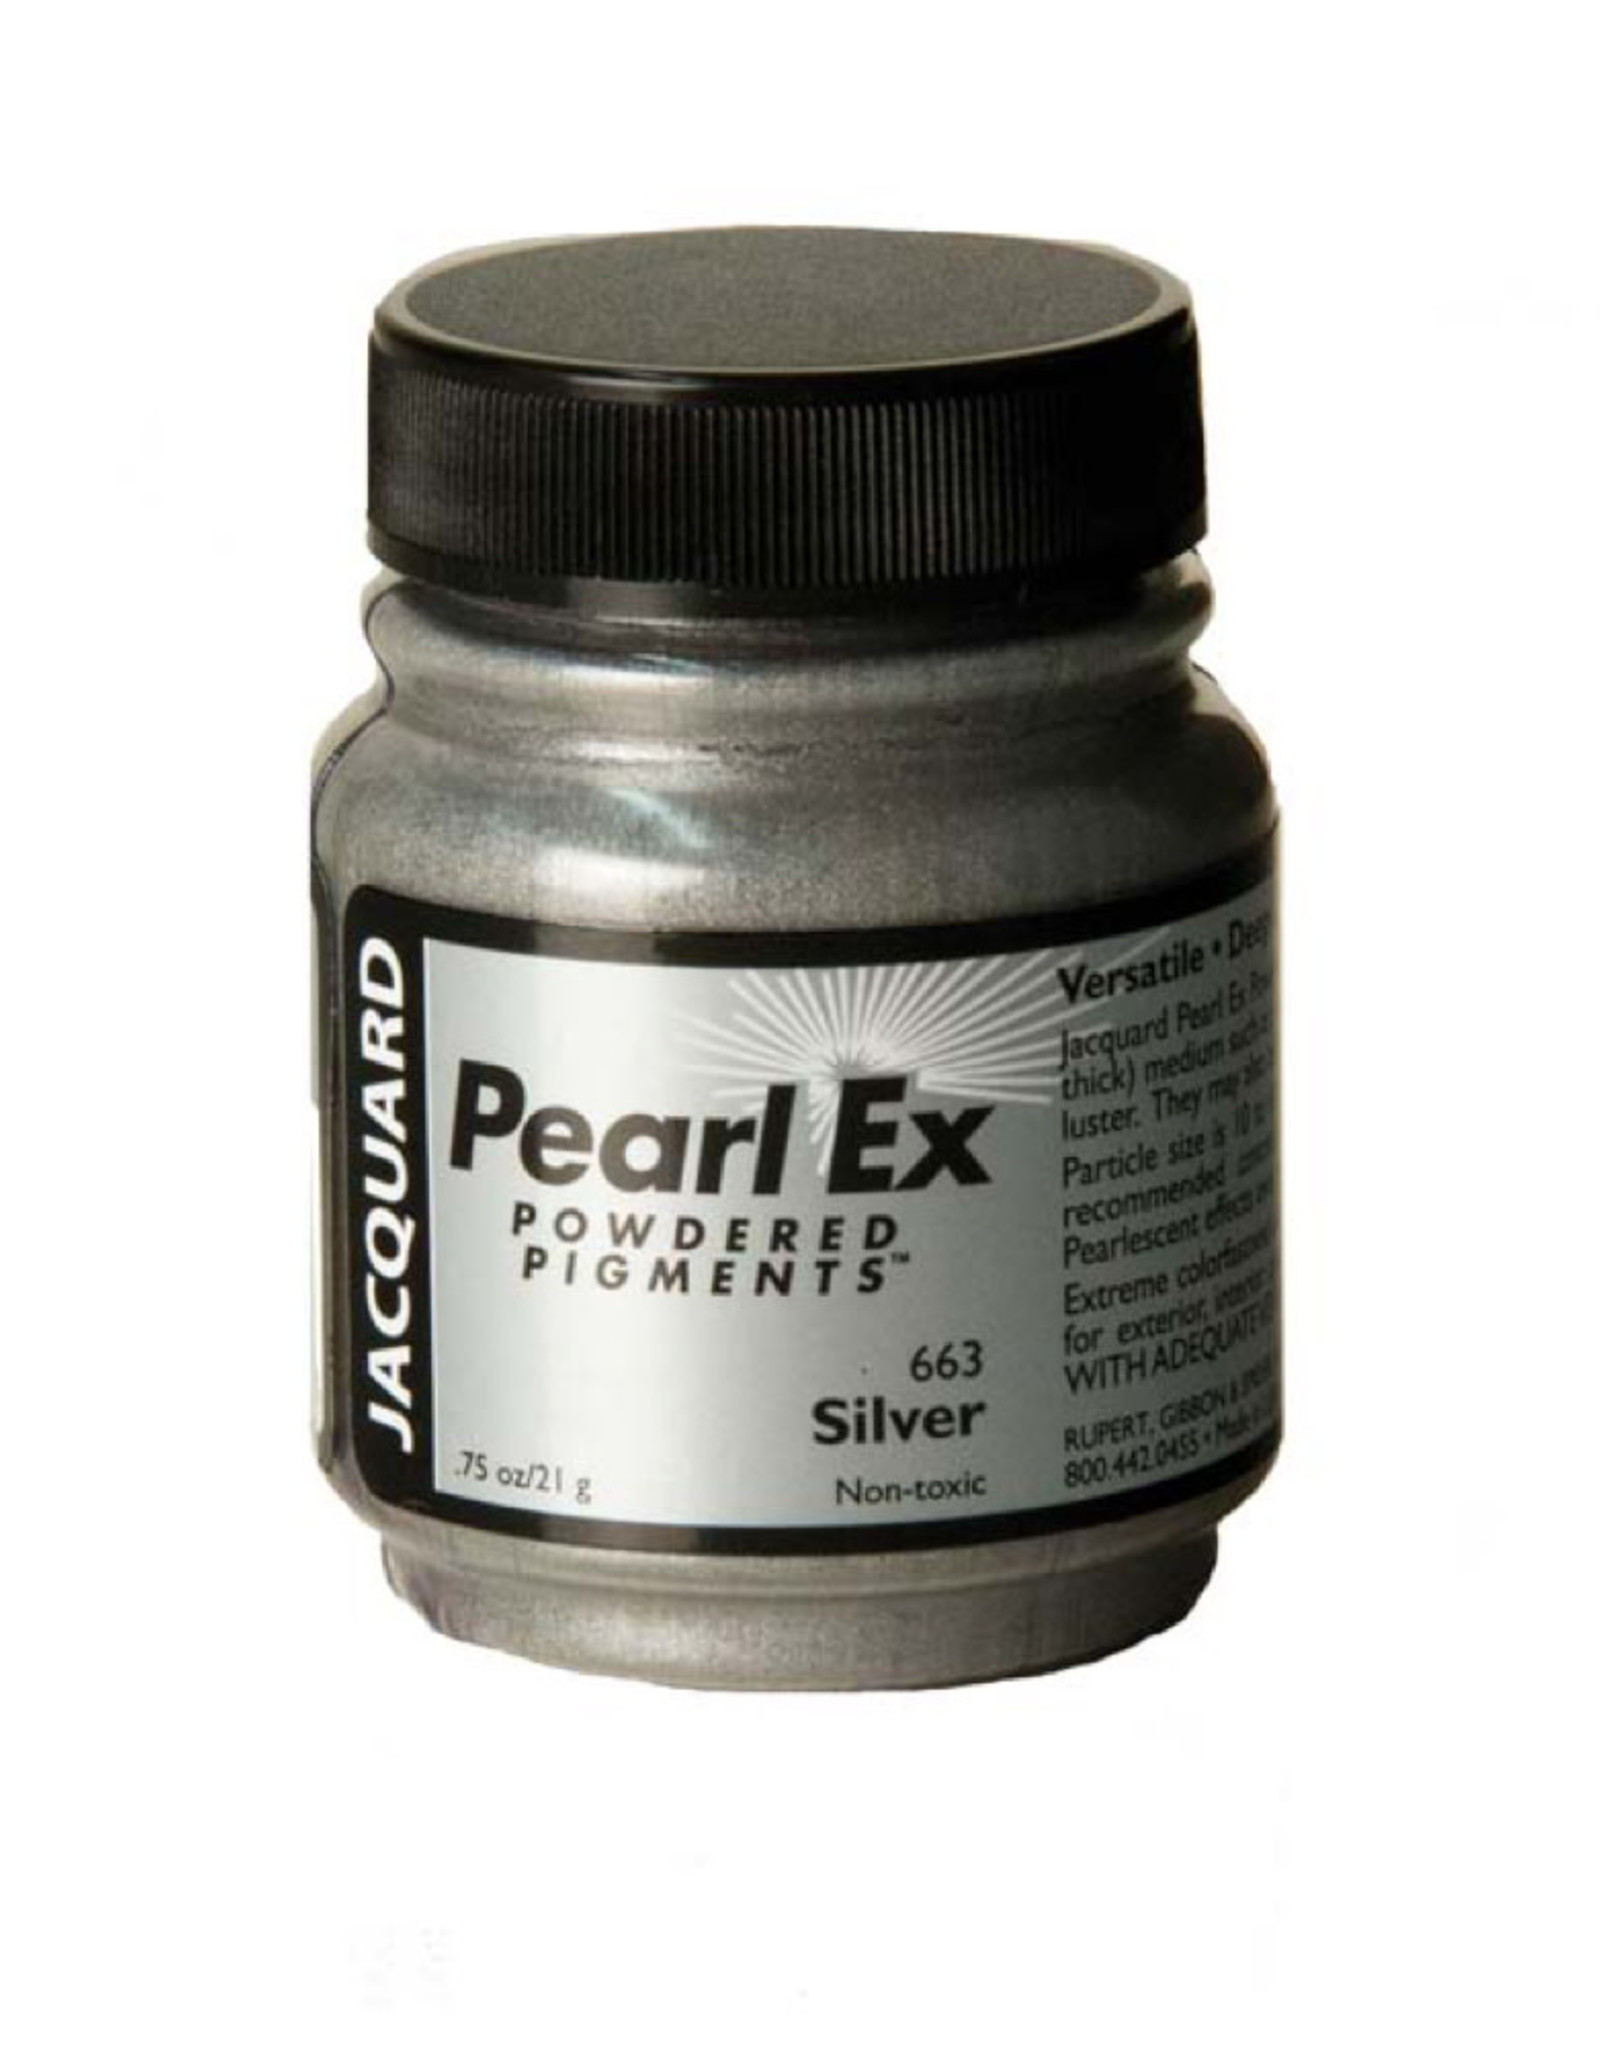 La poudre de mica Pearl Ex Emeraude est produite par Jacquard Products.  Ce sont des pigments stables et qui ne se déco